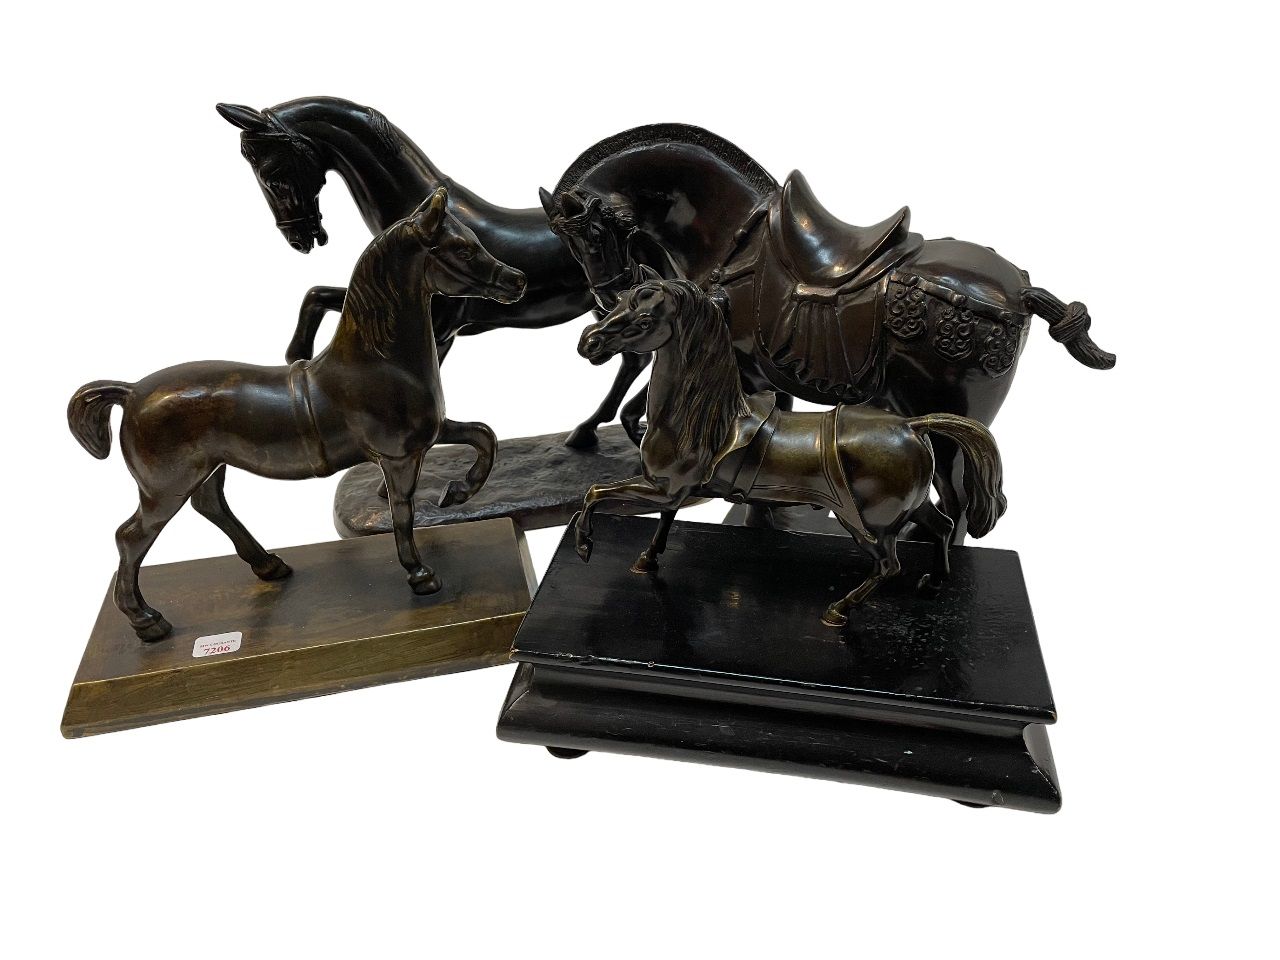 Null 一批表现马匹的雷古拉雕塑。
复制品。